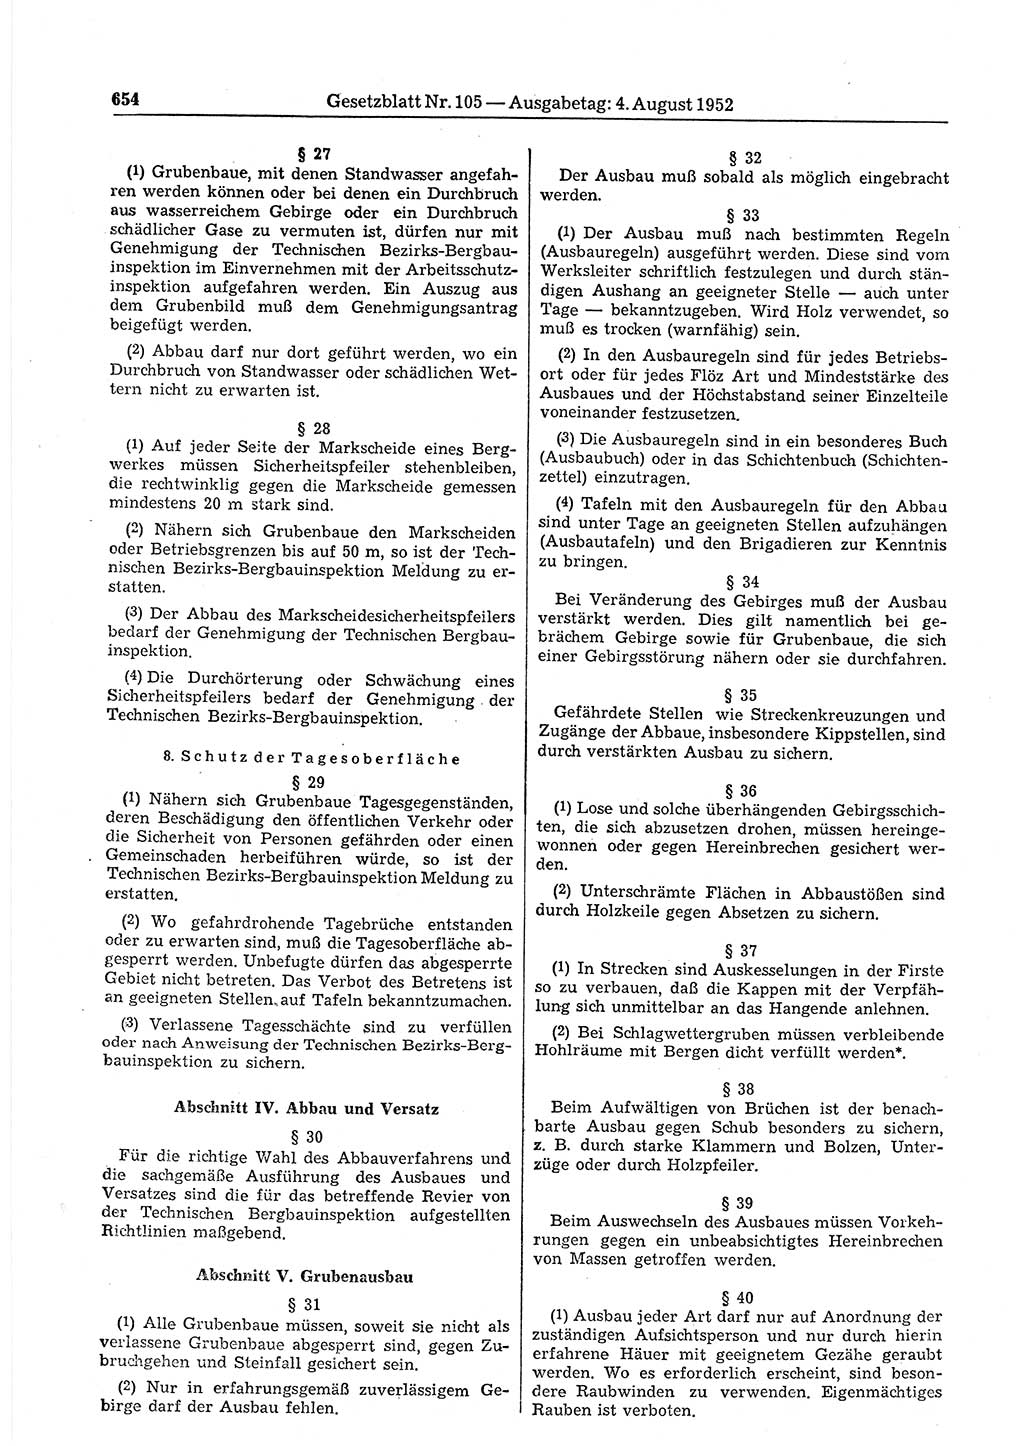 Gesetzblatt (GBl.) der Deutschen Demokratischen Republik (DDR) 1952, Seite 654 (GBl. DDR 1952, S. 654)